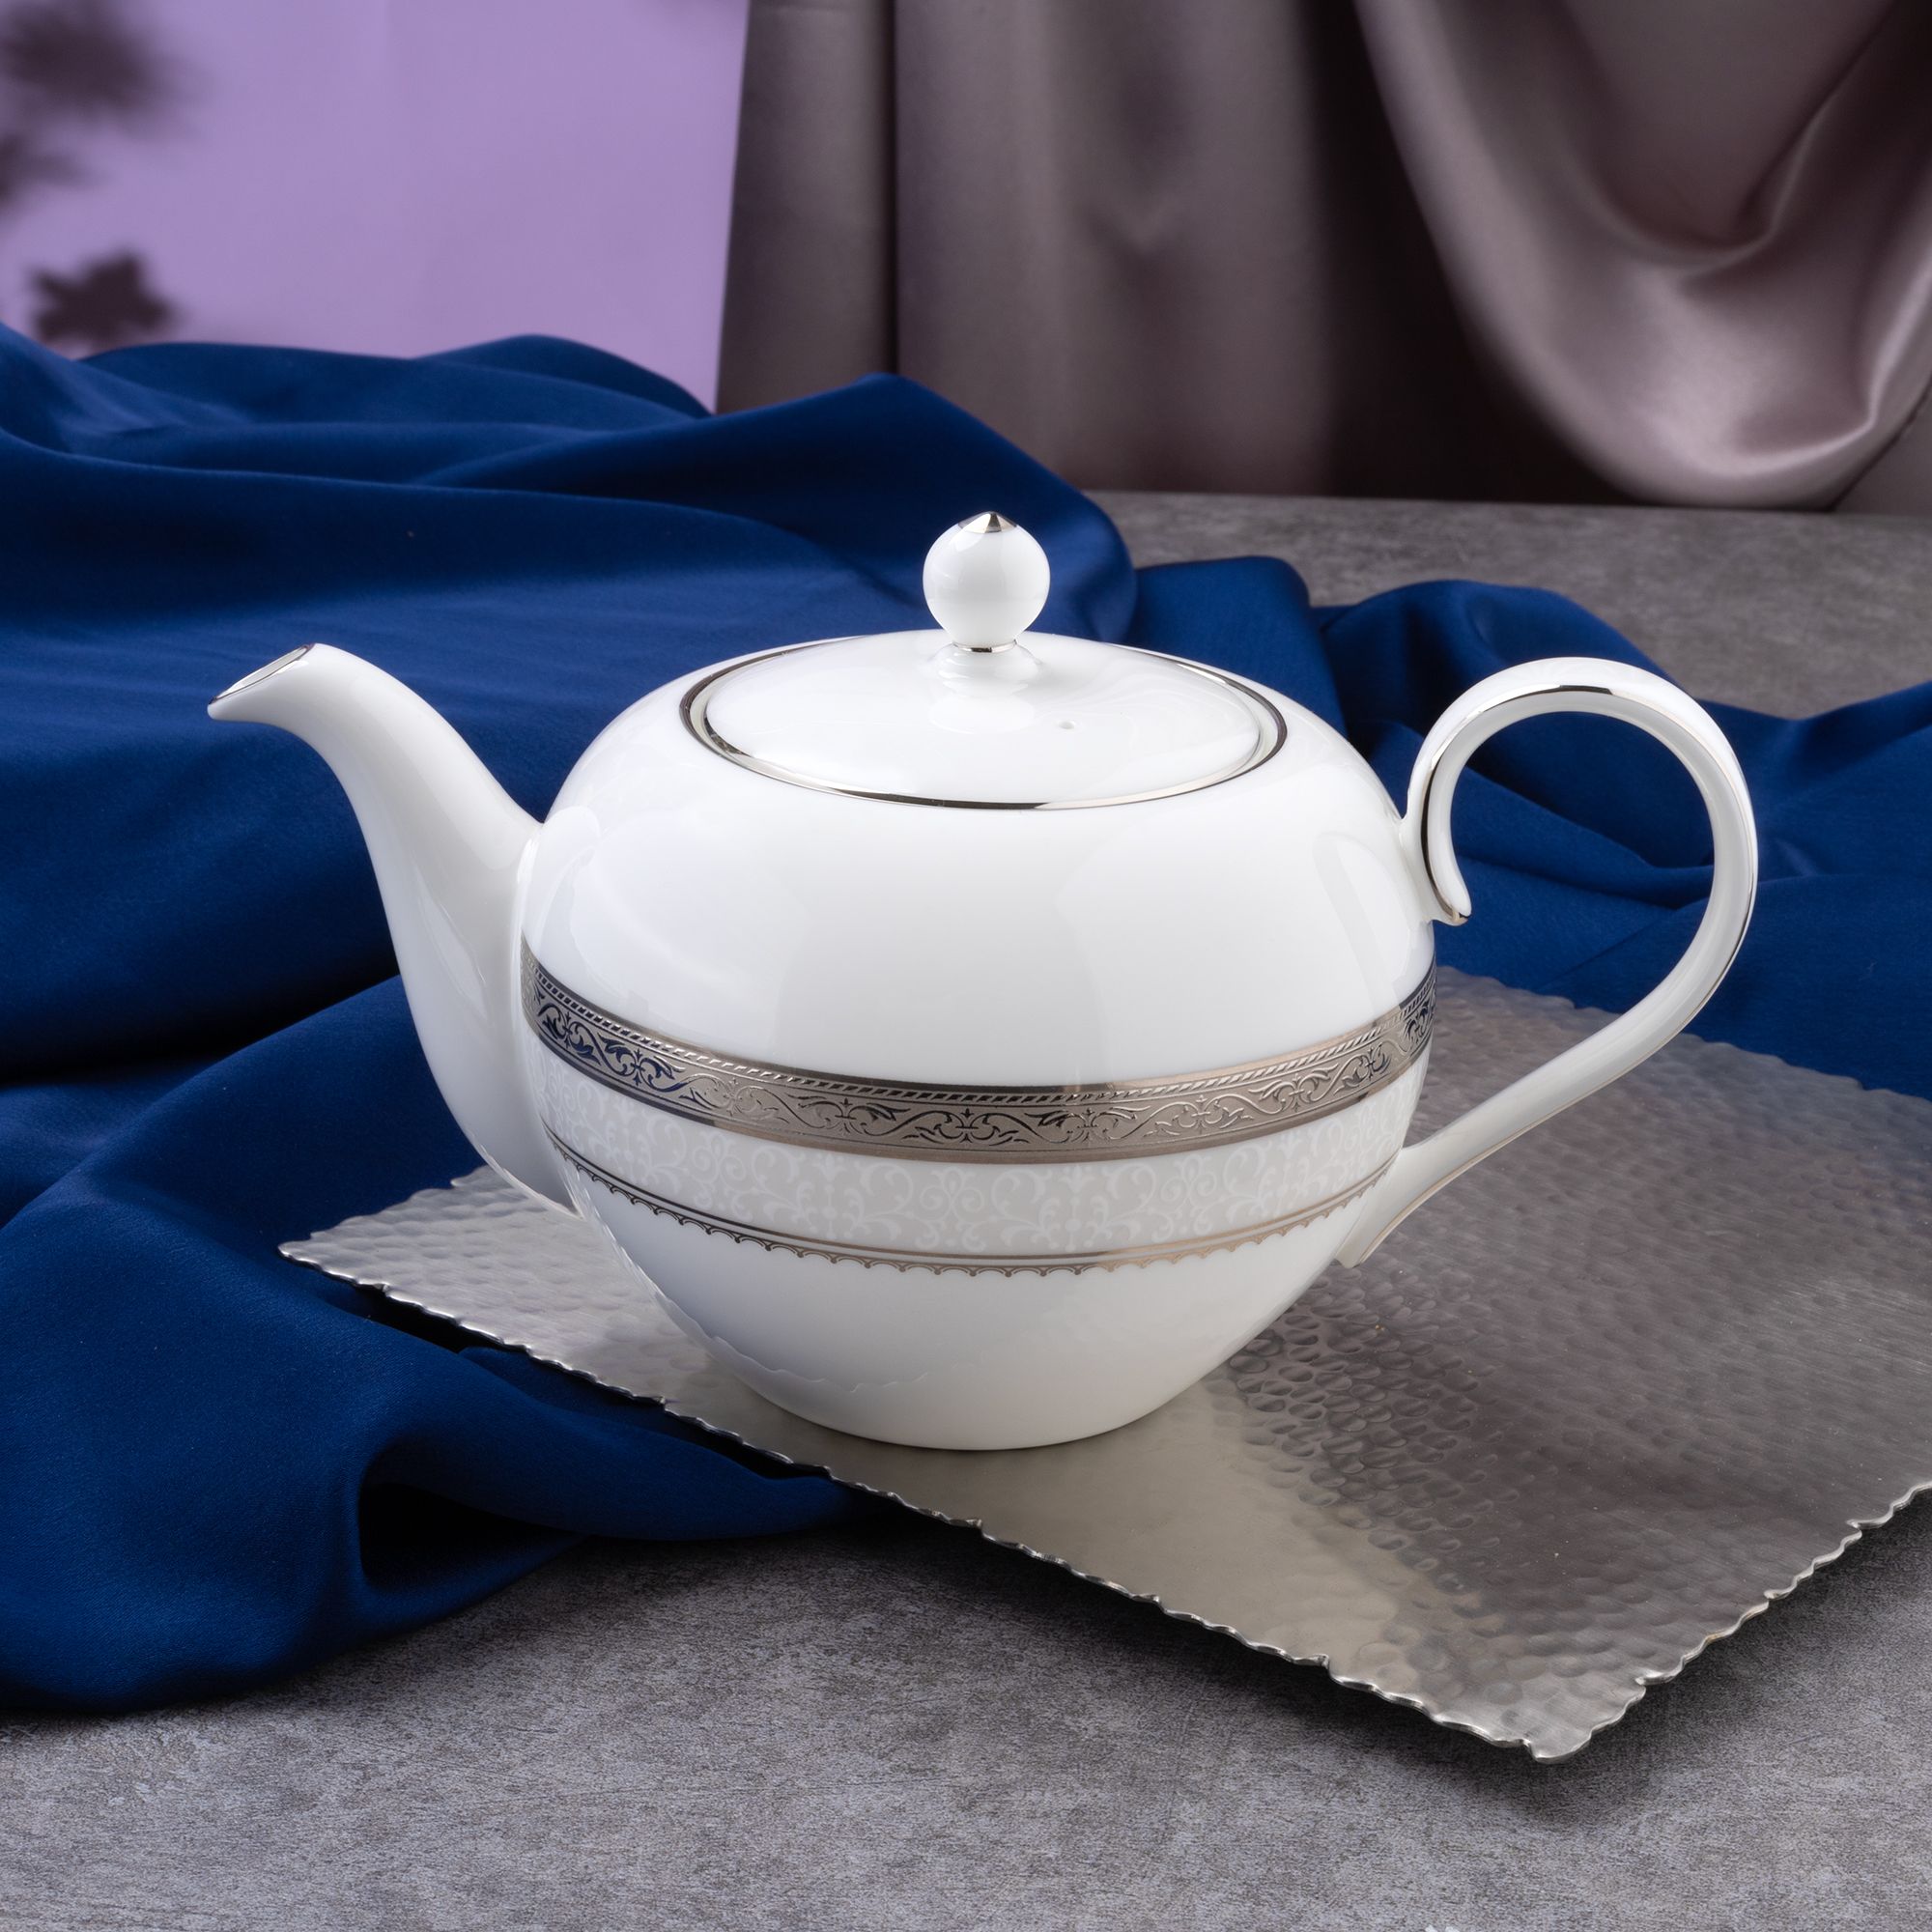  Bộ ấm chén uống trà 13 món (ấm nhỏ 650ml) sứ xương cao cấp | Odessa Platinum 4875L-T014S 